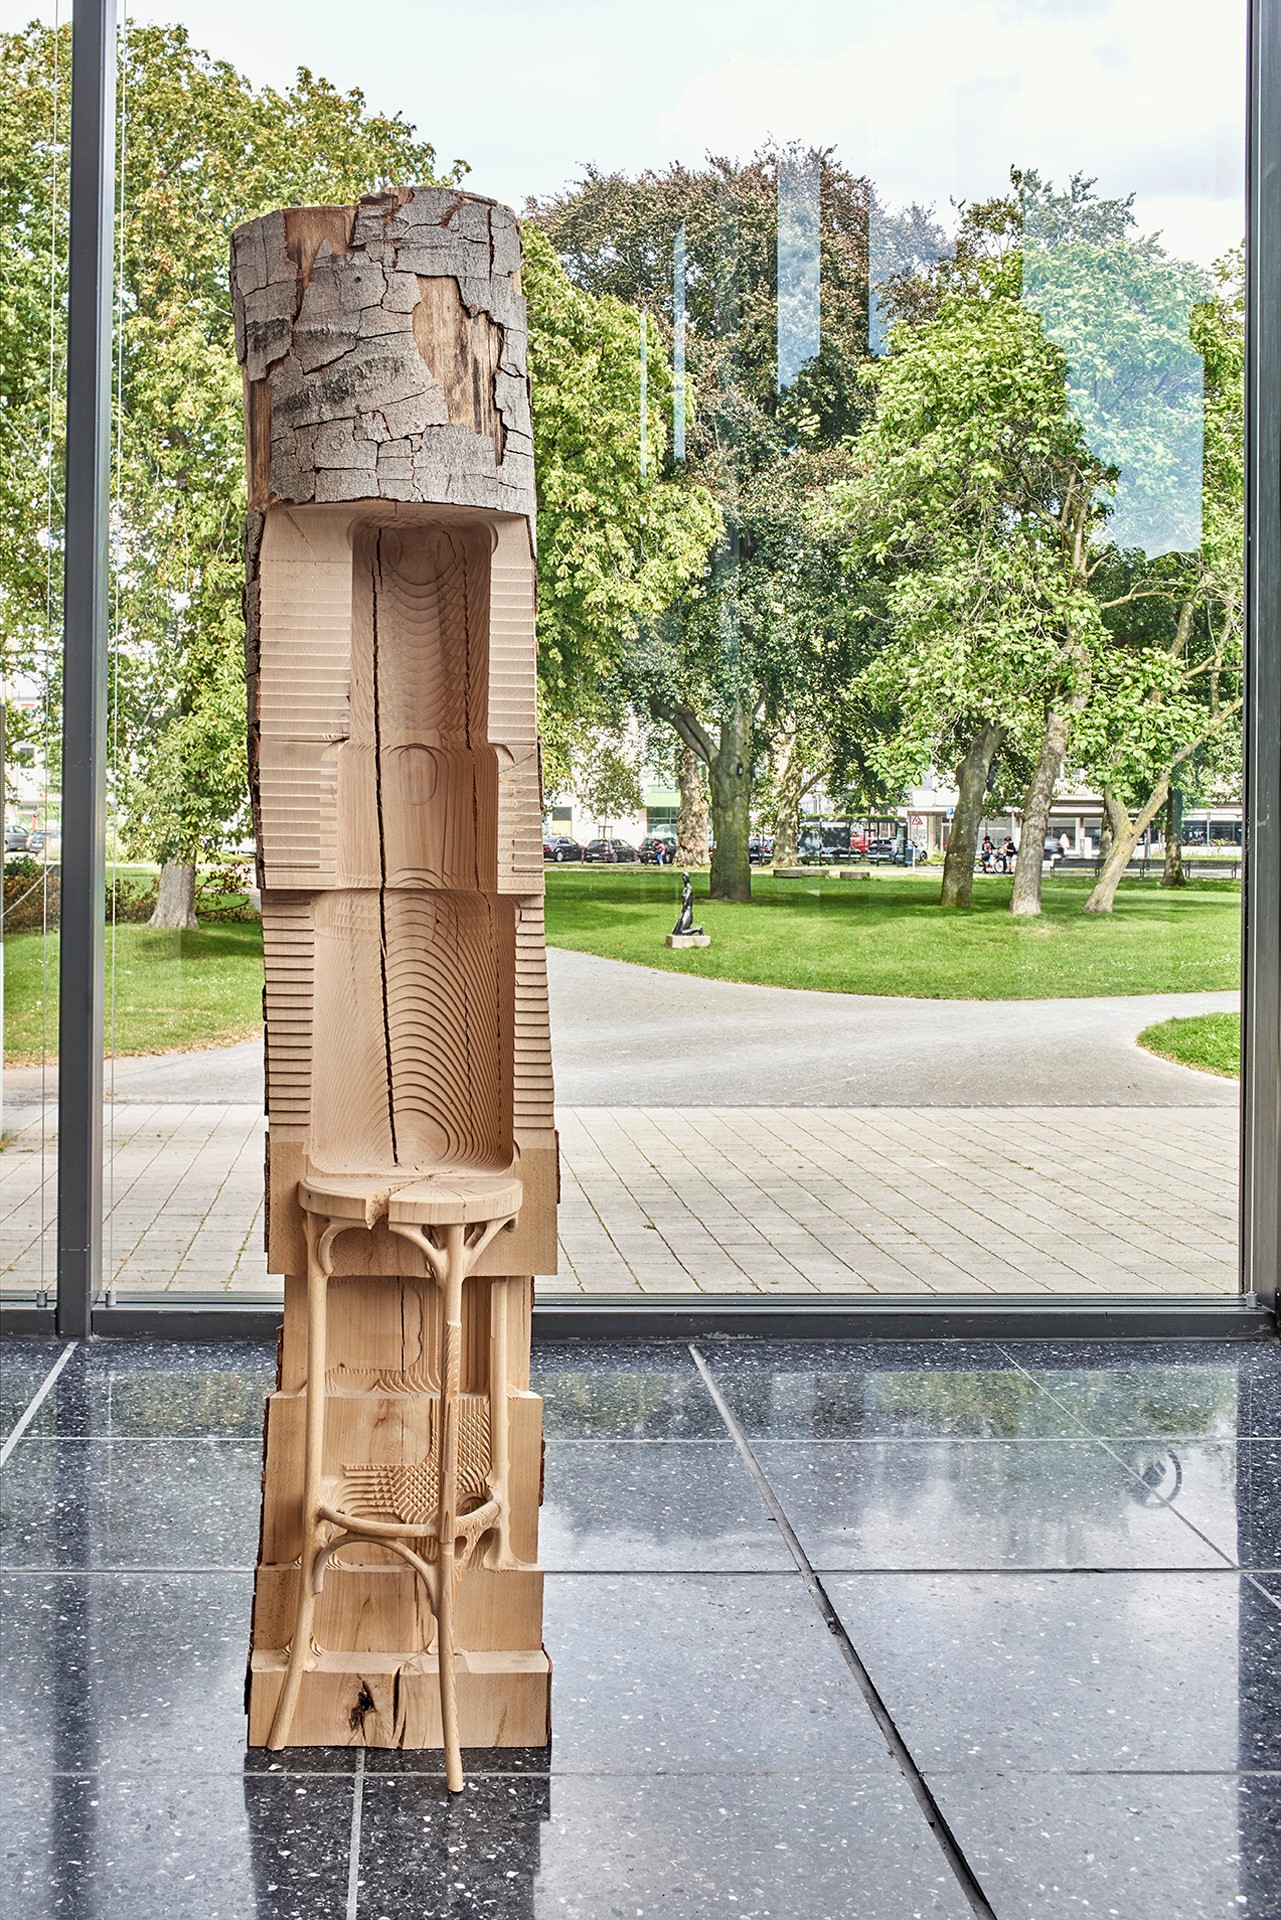 Alicja Kwade, abarstoolisabarstoolisabarstool, 2019, Lehmbruck-Museum, ein Barhocker, der aus einem Baumstamm zur Hälfte heuausgefräst wurde.